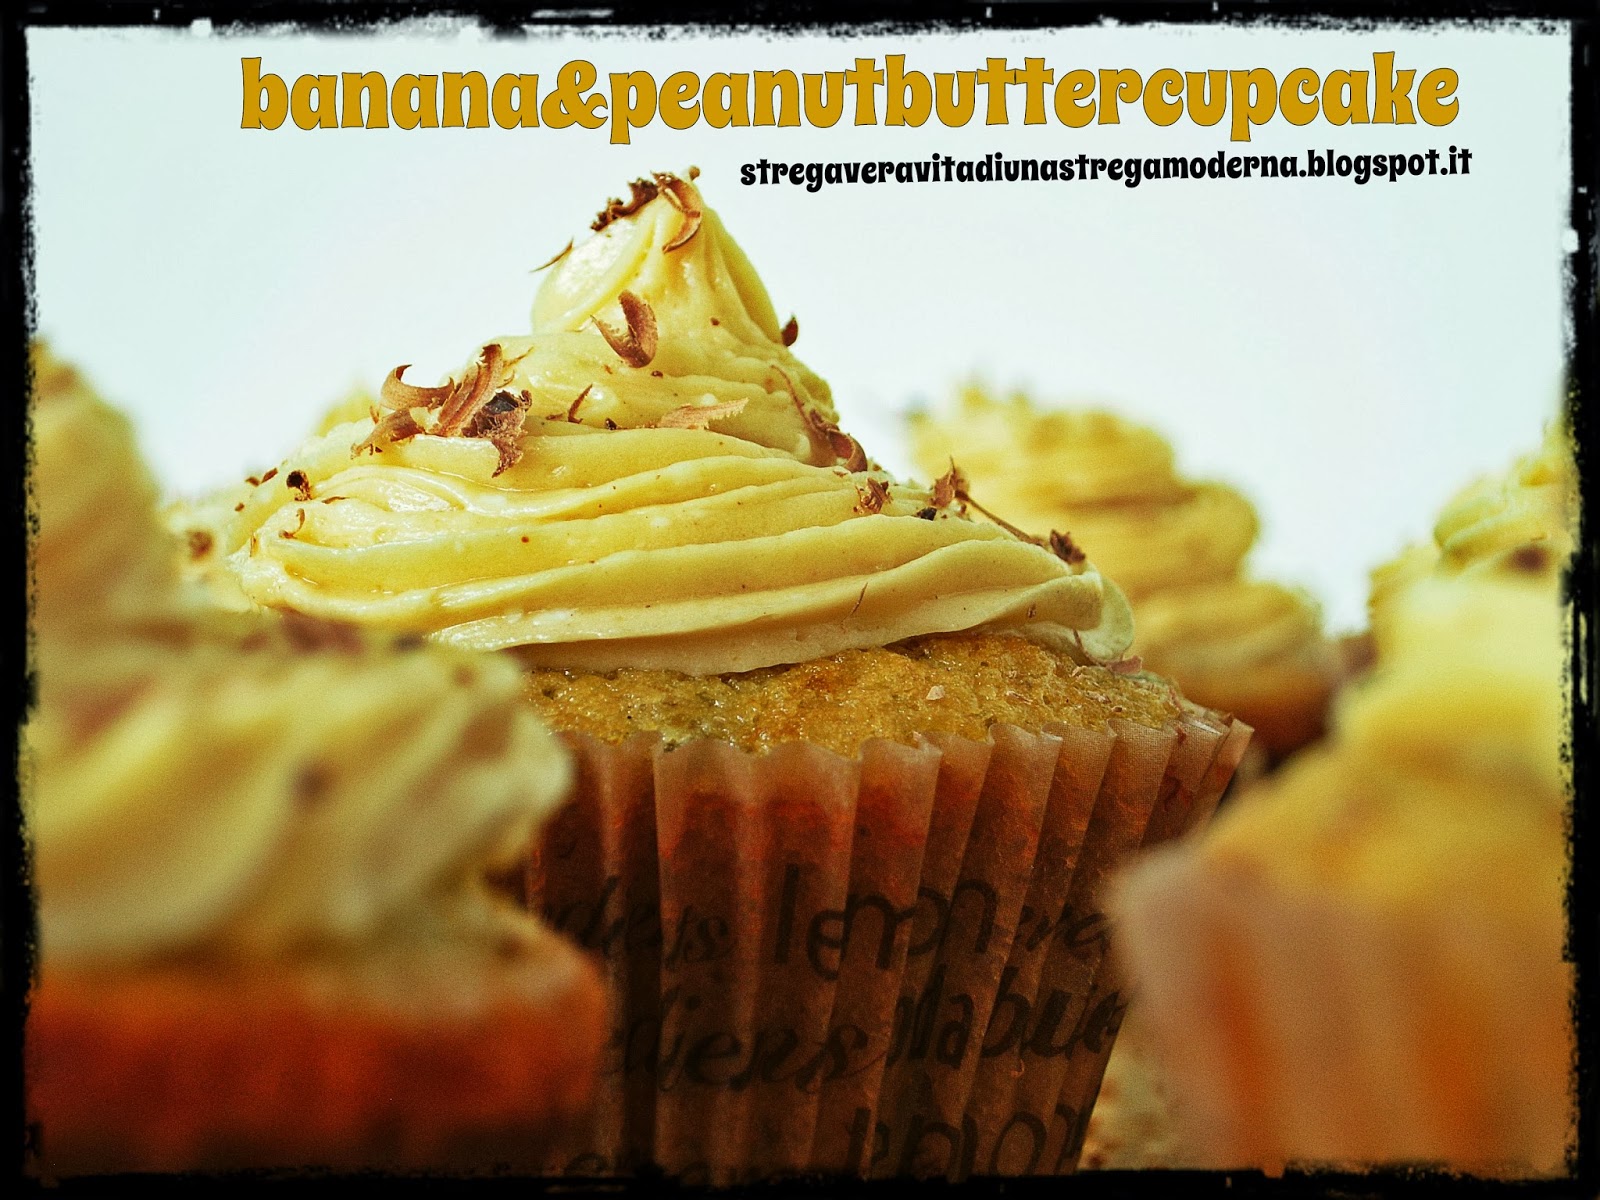 banana & peanut butter cupcake